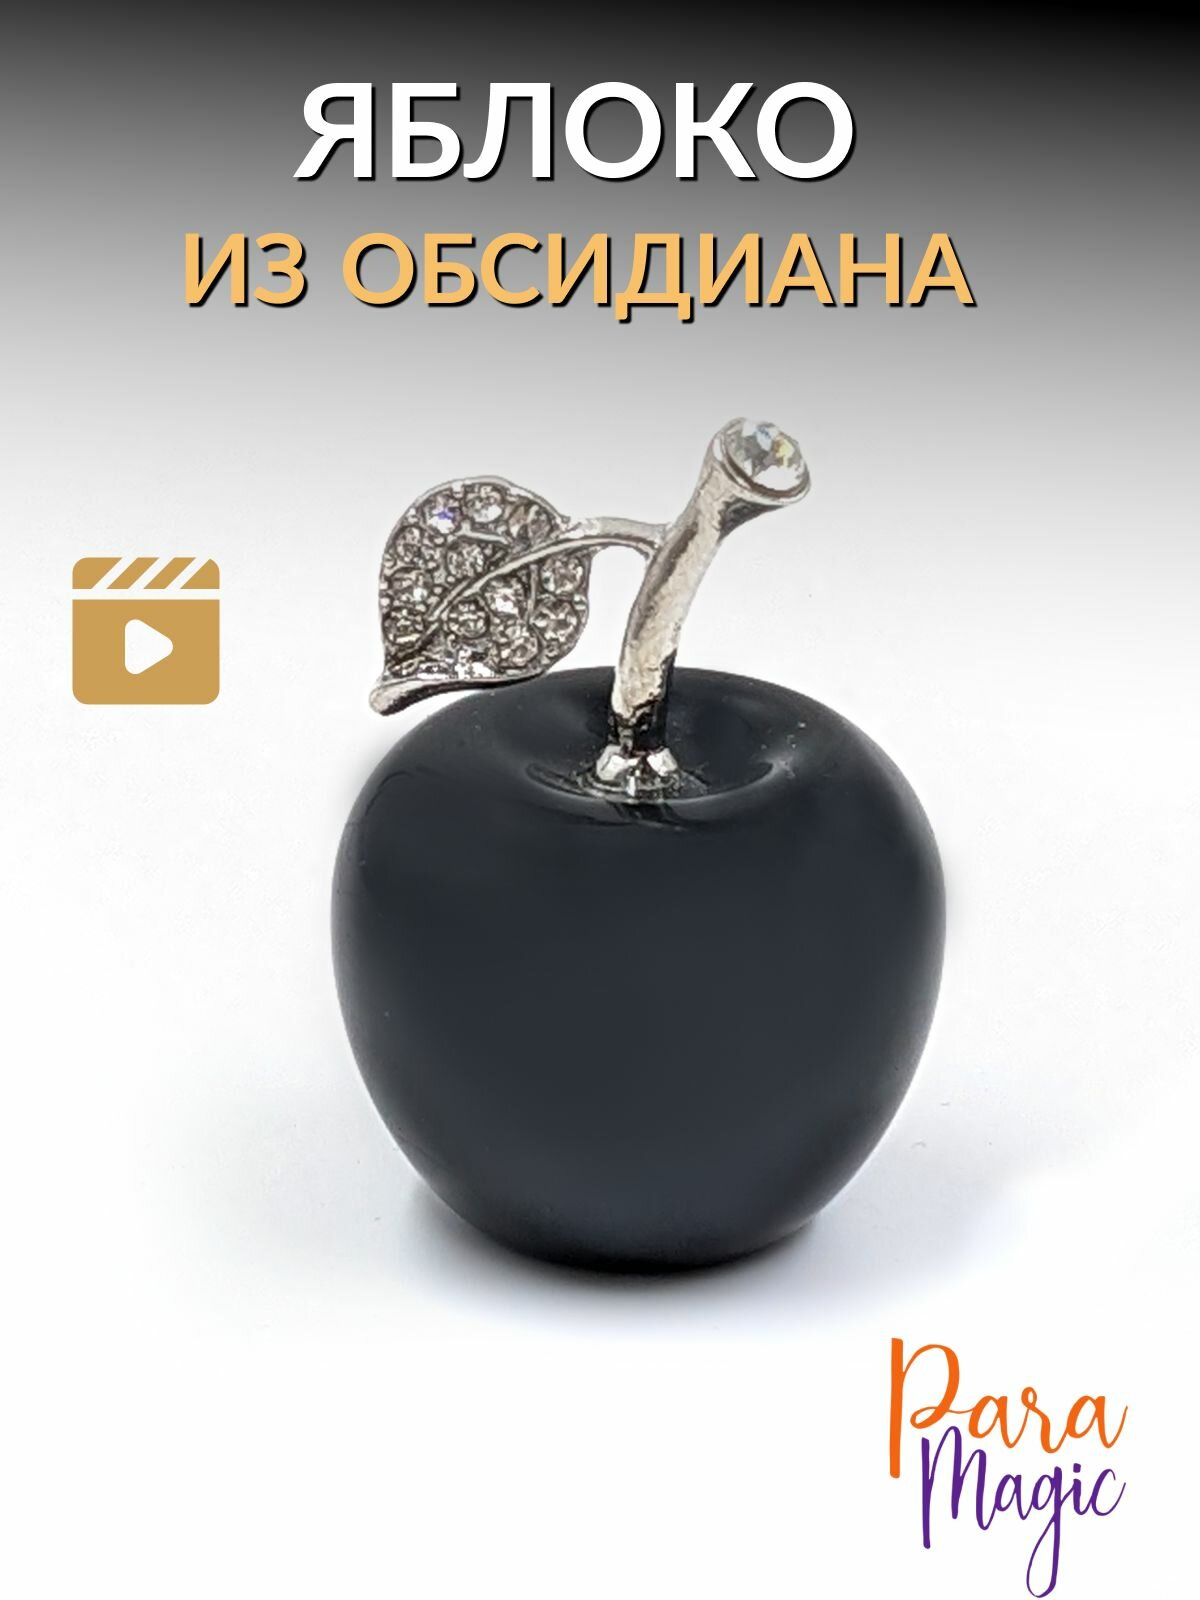 Обсидиан черный Яблоко, натуральный камень, размер 2,5х3см.